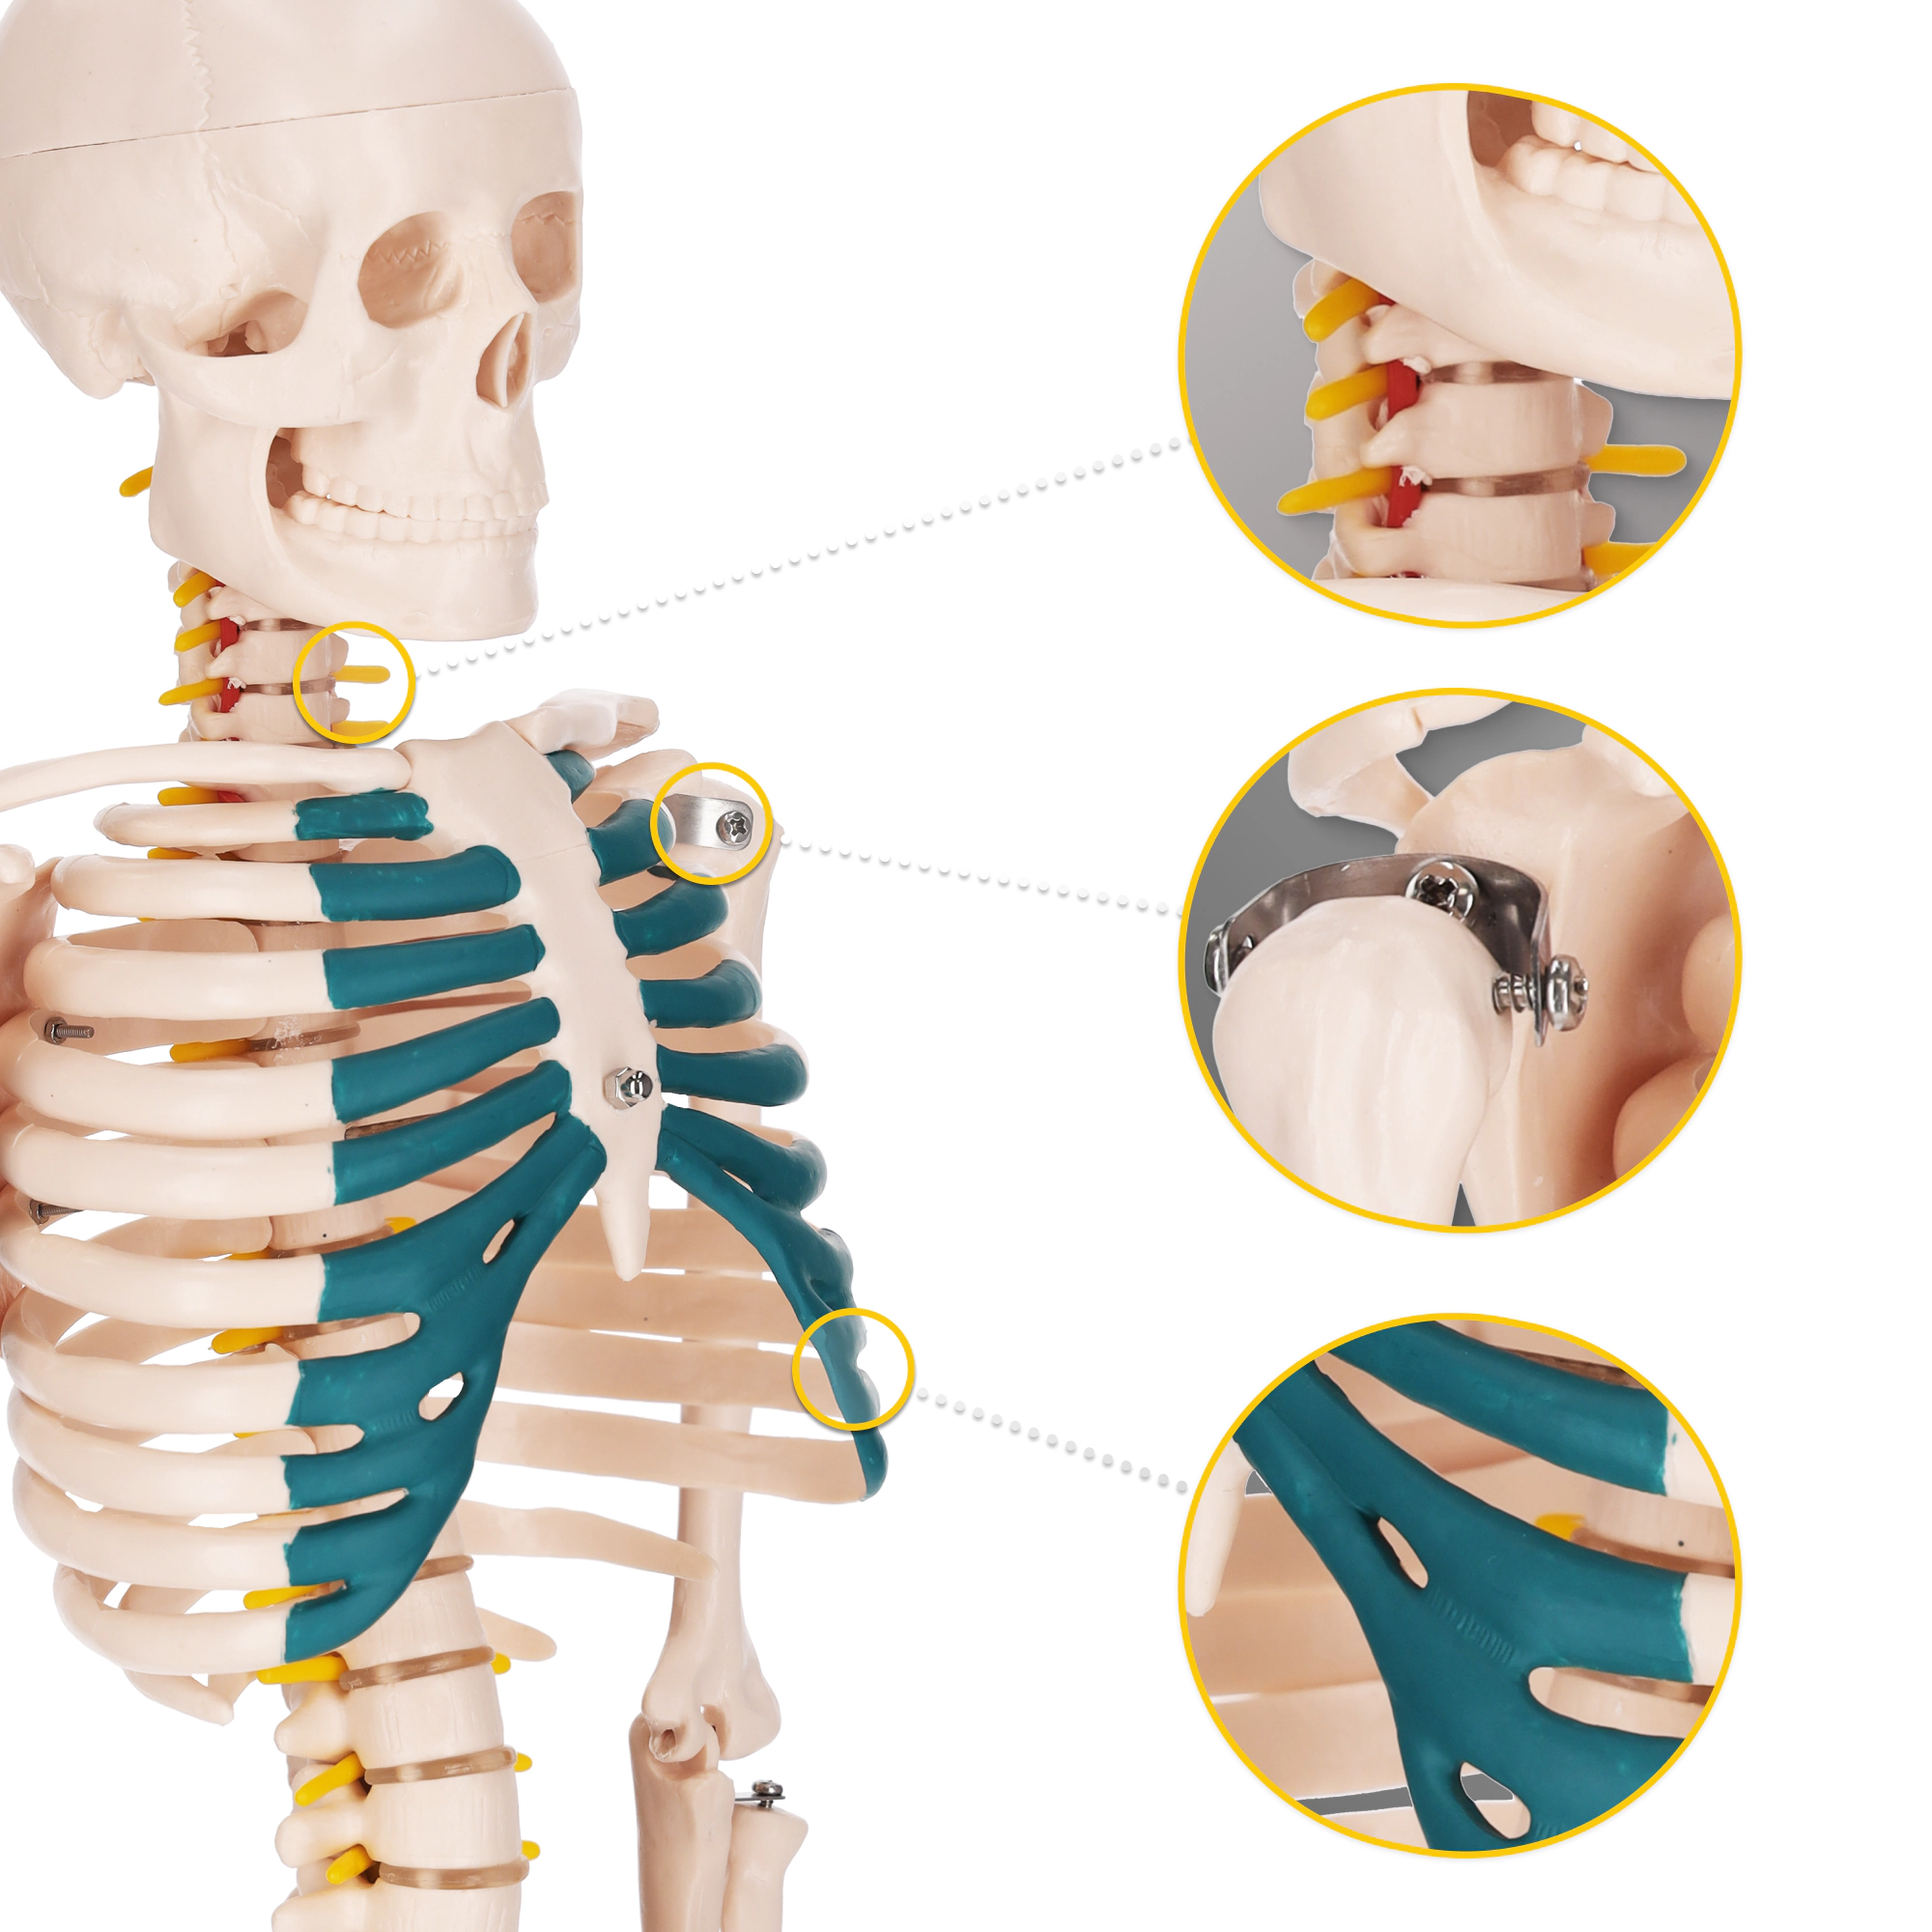 anatomický model kostra človeka náuka o kostrovom systéme anatómia